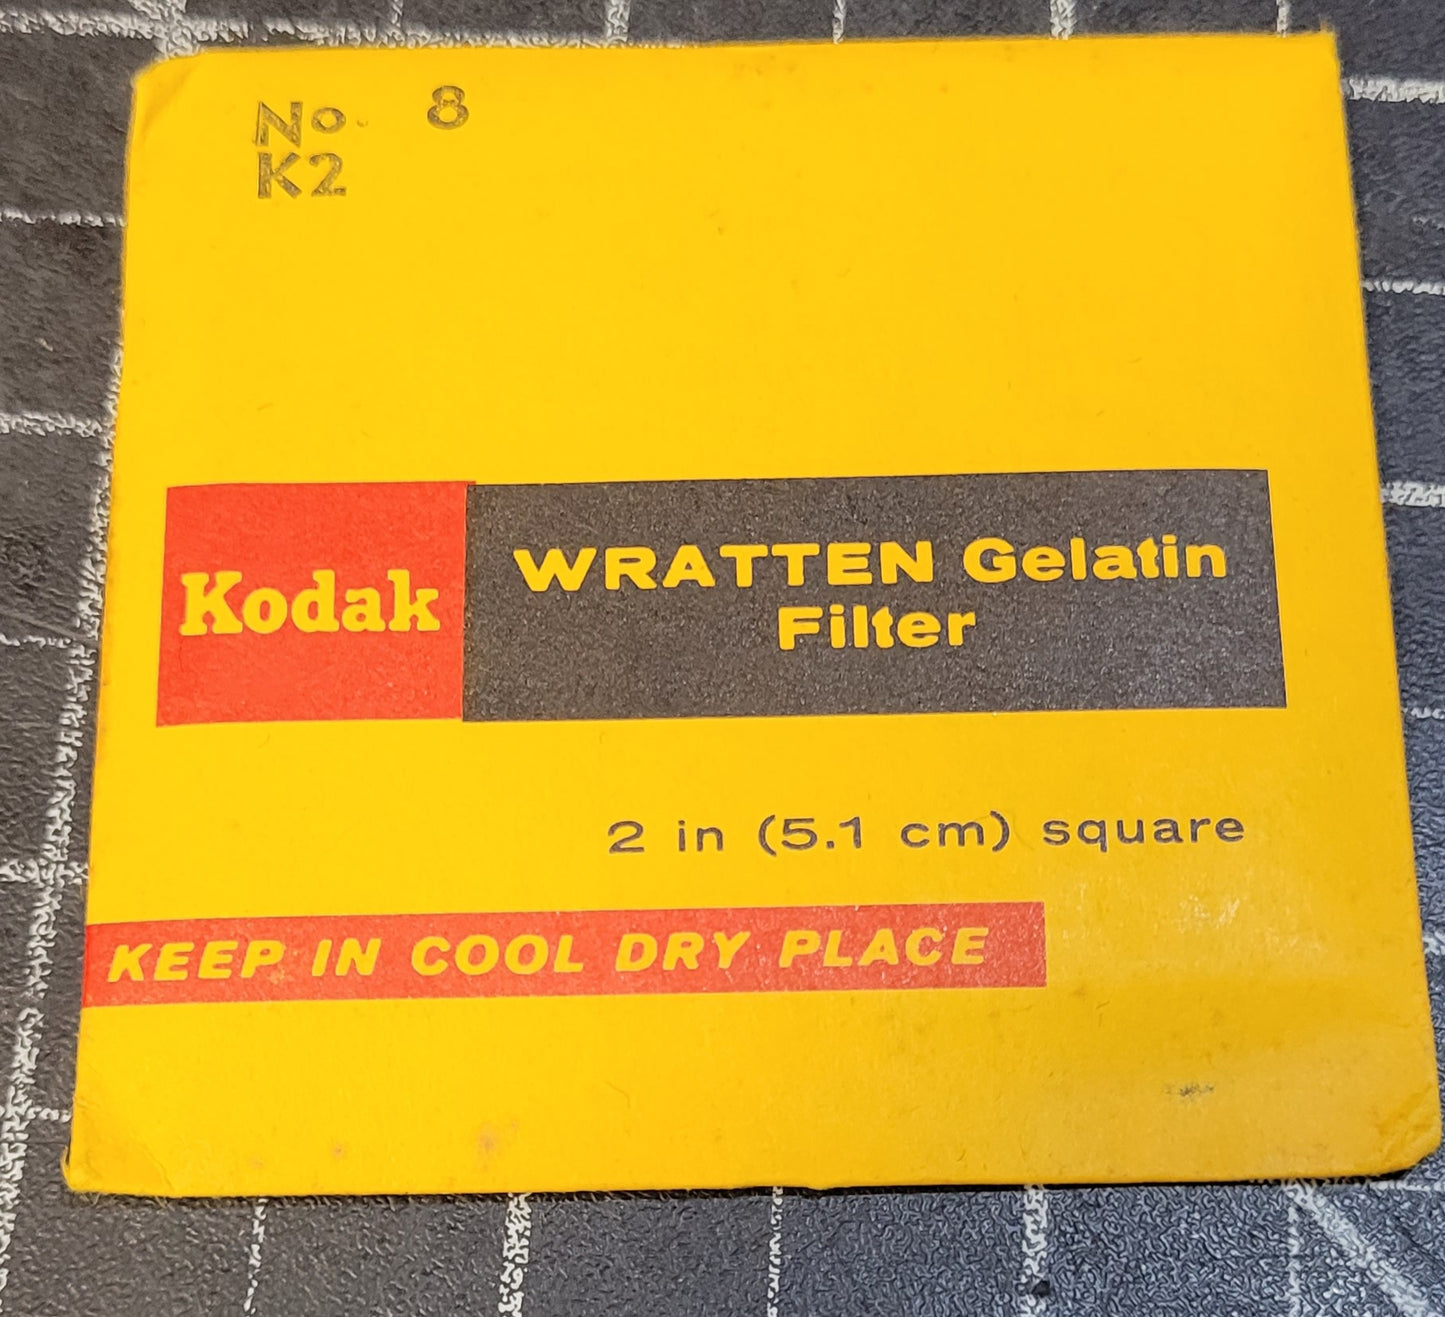 Kodak Wratten Gel Filter (No.8) 2" x 2"